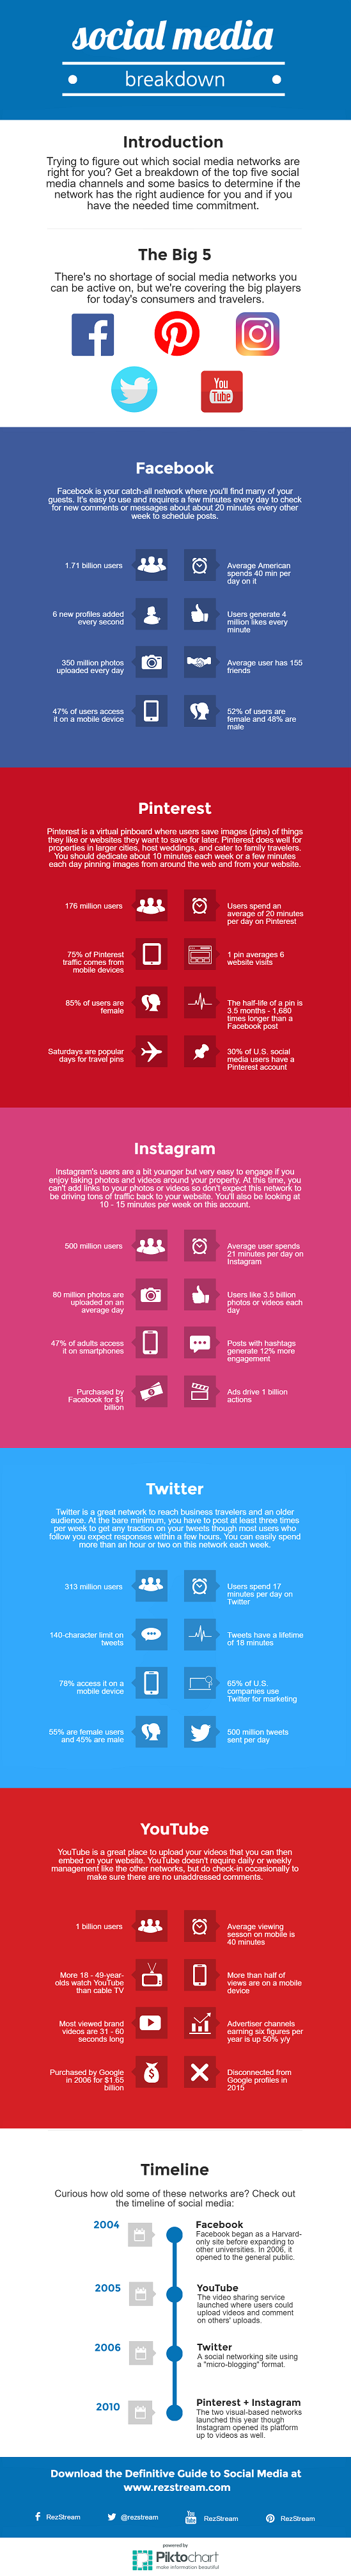 Social media network breakdown infographic